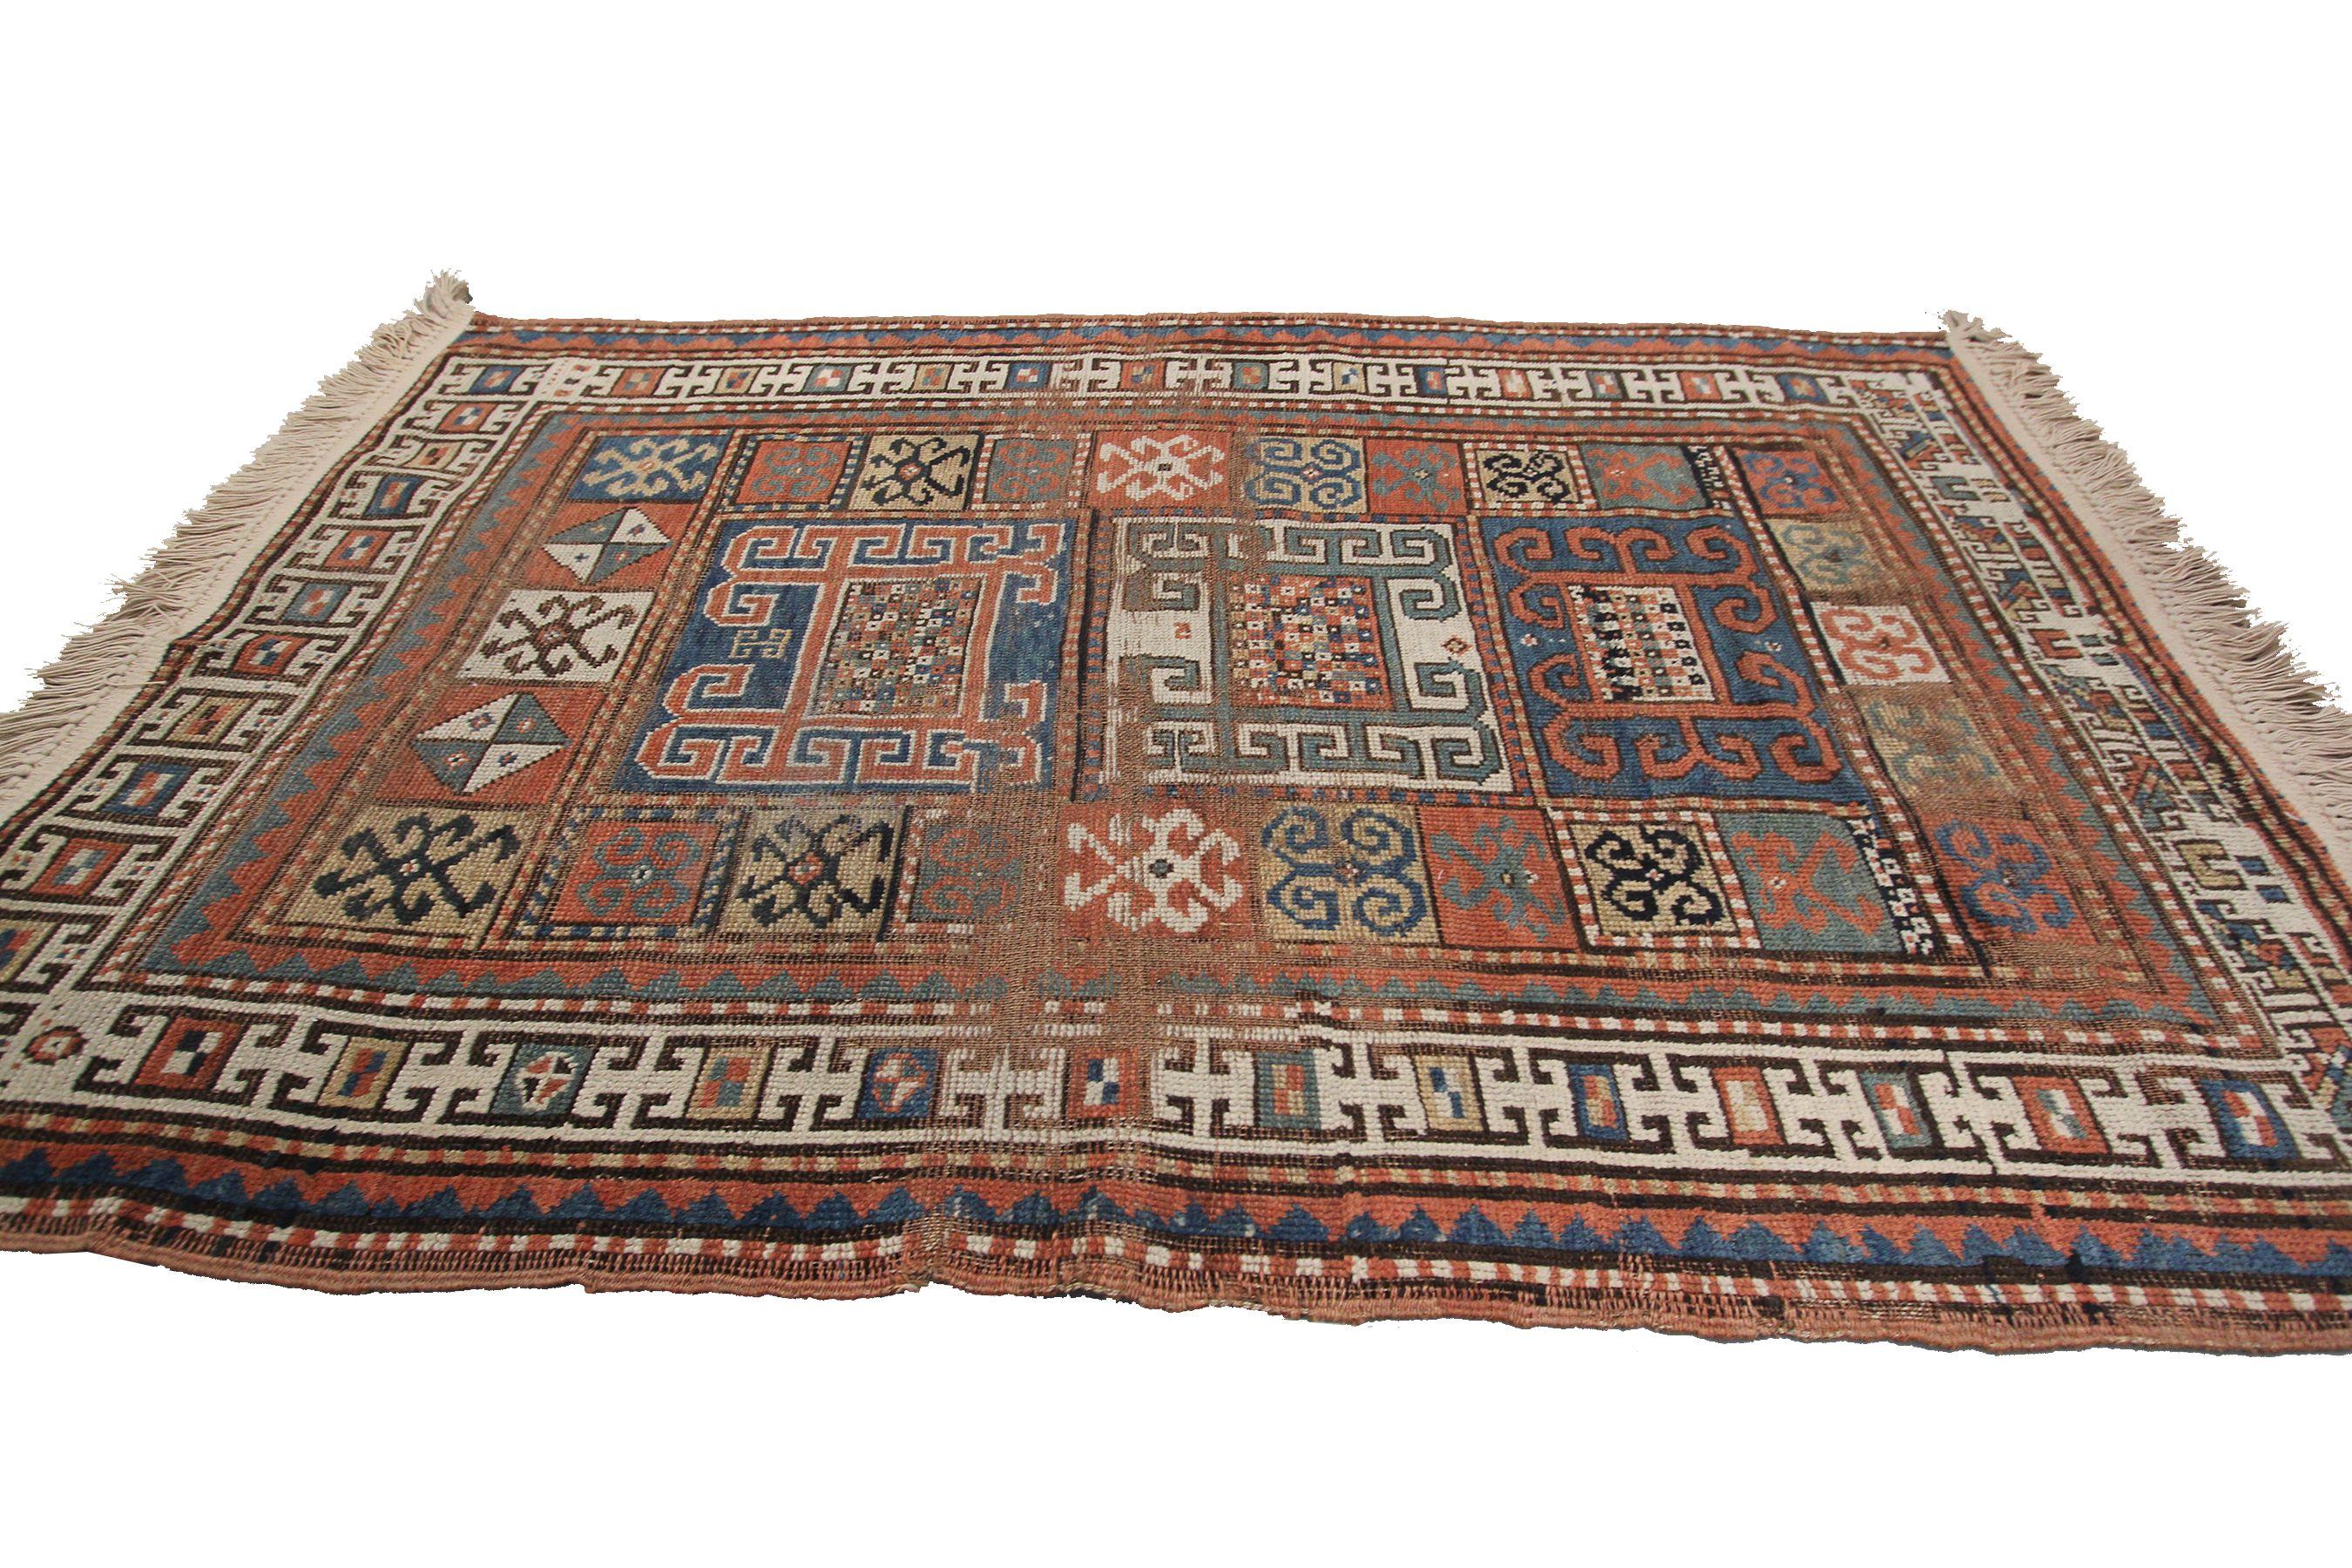 Antique Caucasian Pinwheel Kazak Rug Rare Wool Tribal
4 x6 (3'7